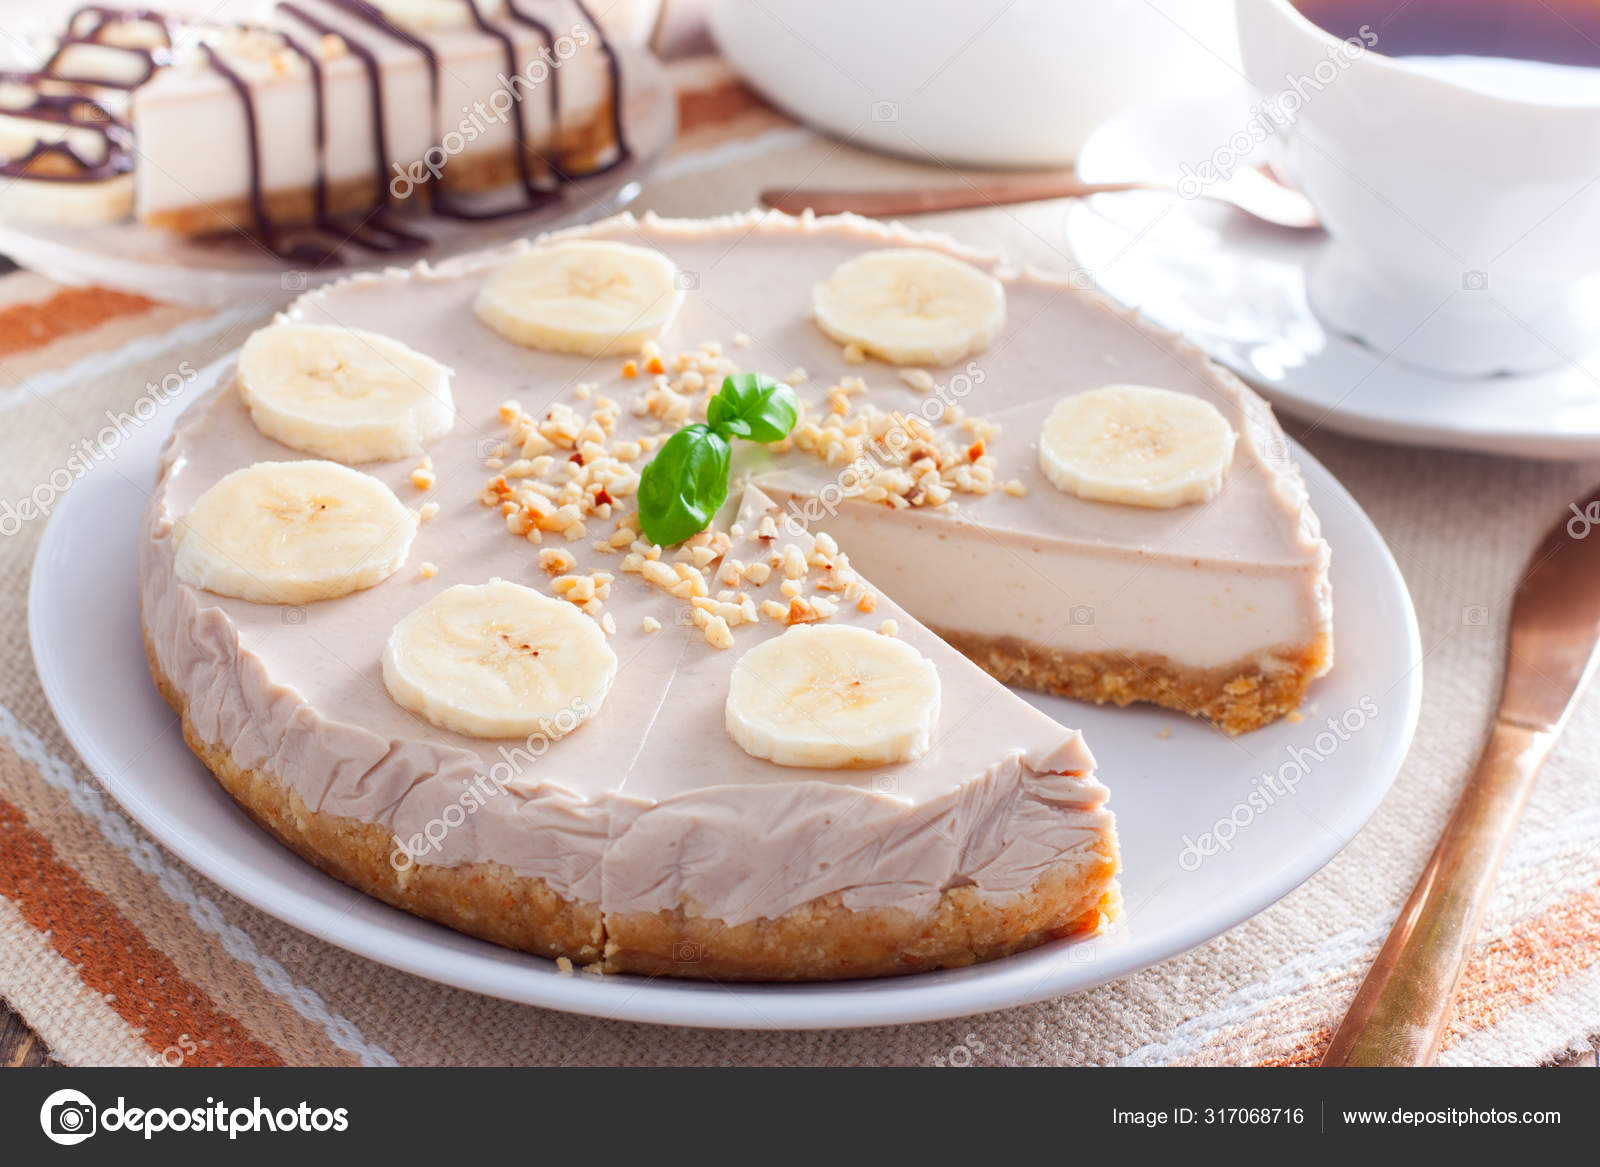 Чизкейк с домашним творогом и печеньем. Торт банановый чизкейк. Банановый чизкейк с творогом без выпечки. Торт банановый чизкейк без выпечки. Яблочно-банановый чизкейк.